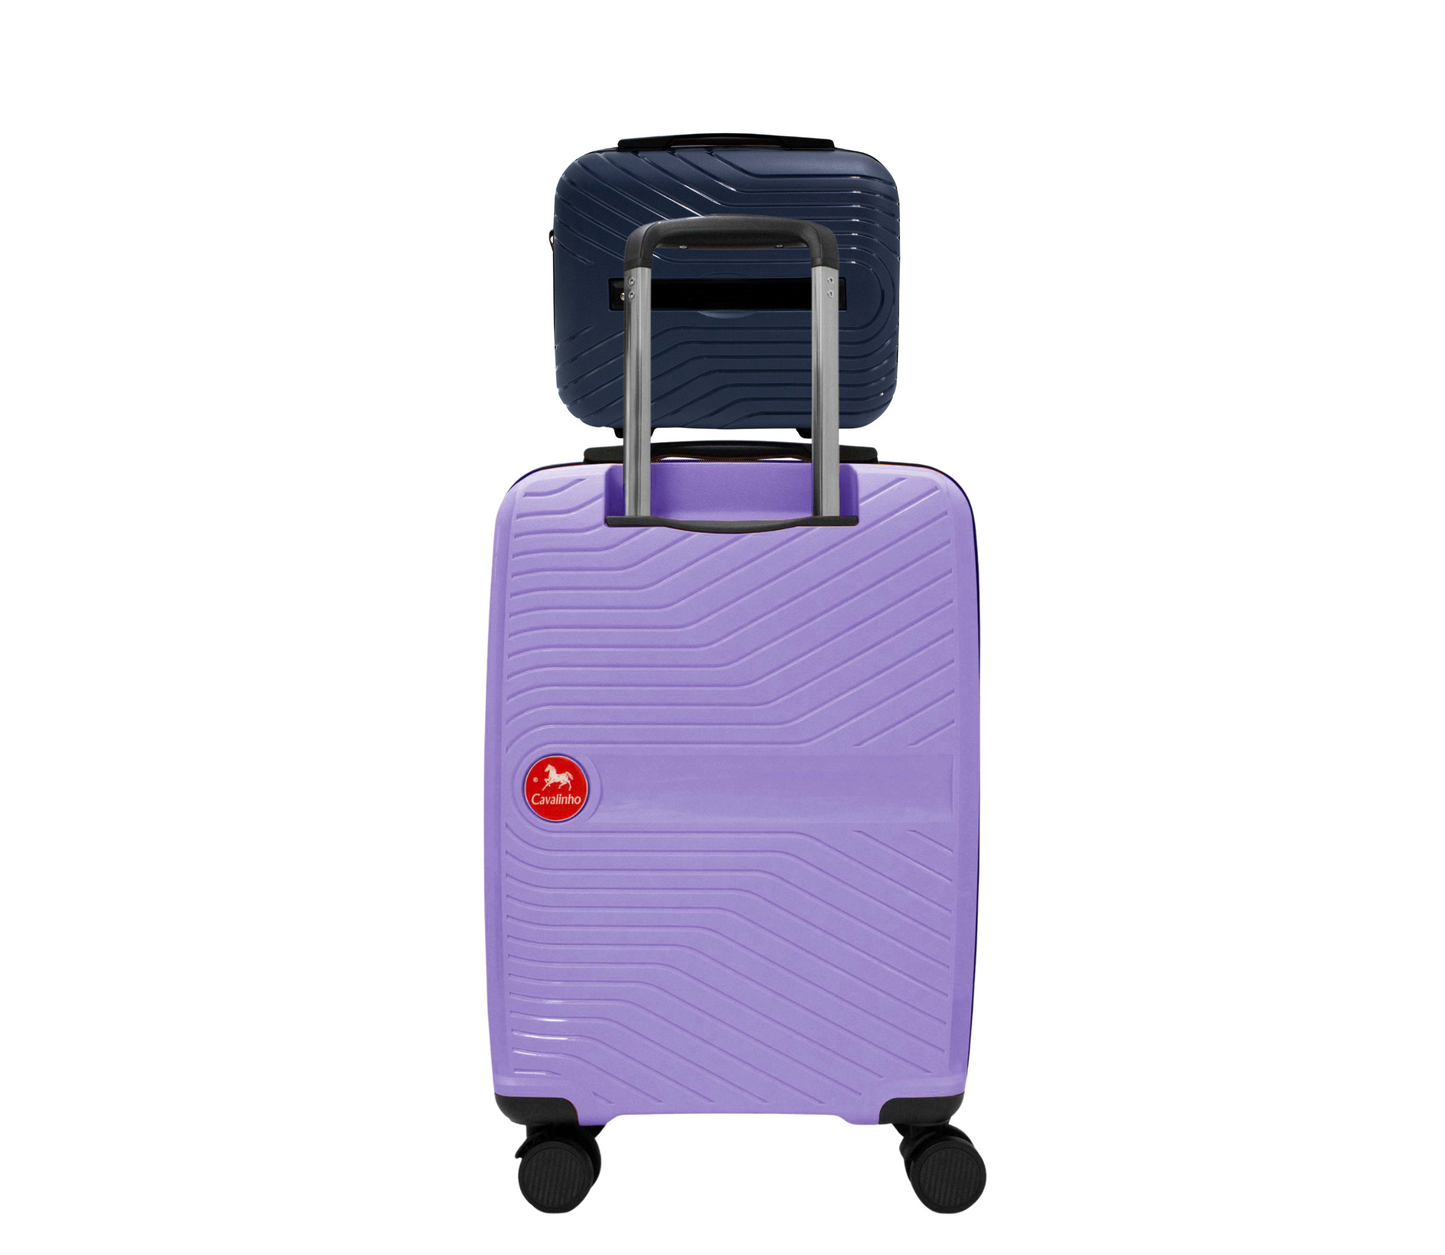 Cavalinho Canada & USA Colorful 2 Piece Luggage Set (15" & 19") - Navy Lilac - 68020004.0339.S1519._2